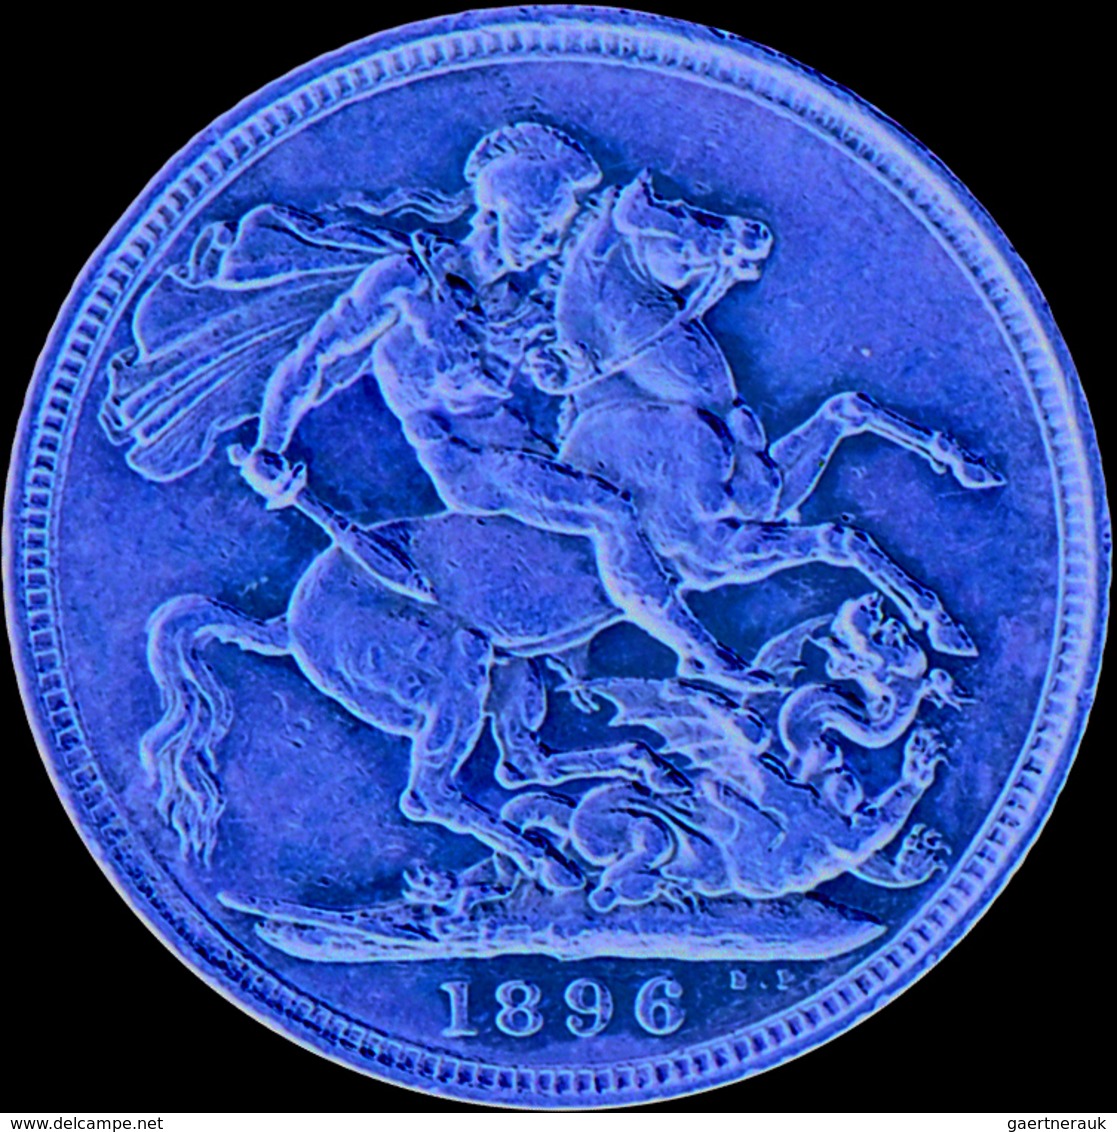 Australien - Anlagegold: Victoria 1837-1901: Lot 5 Goldmünzen: Sovereign 1879 M (KM# 7), Sovereign 1